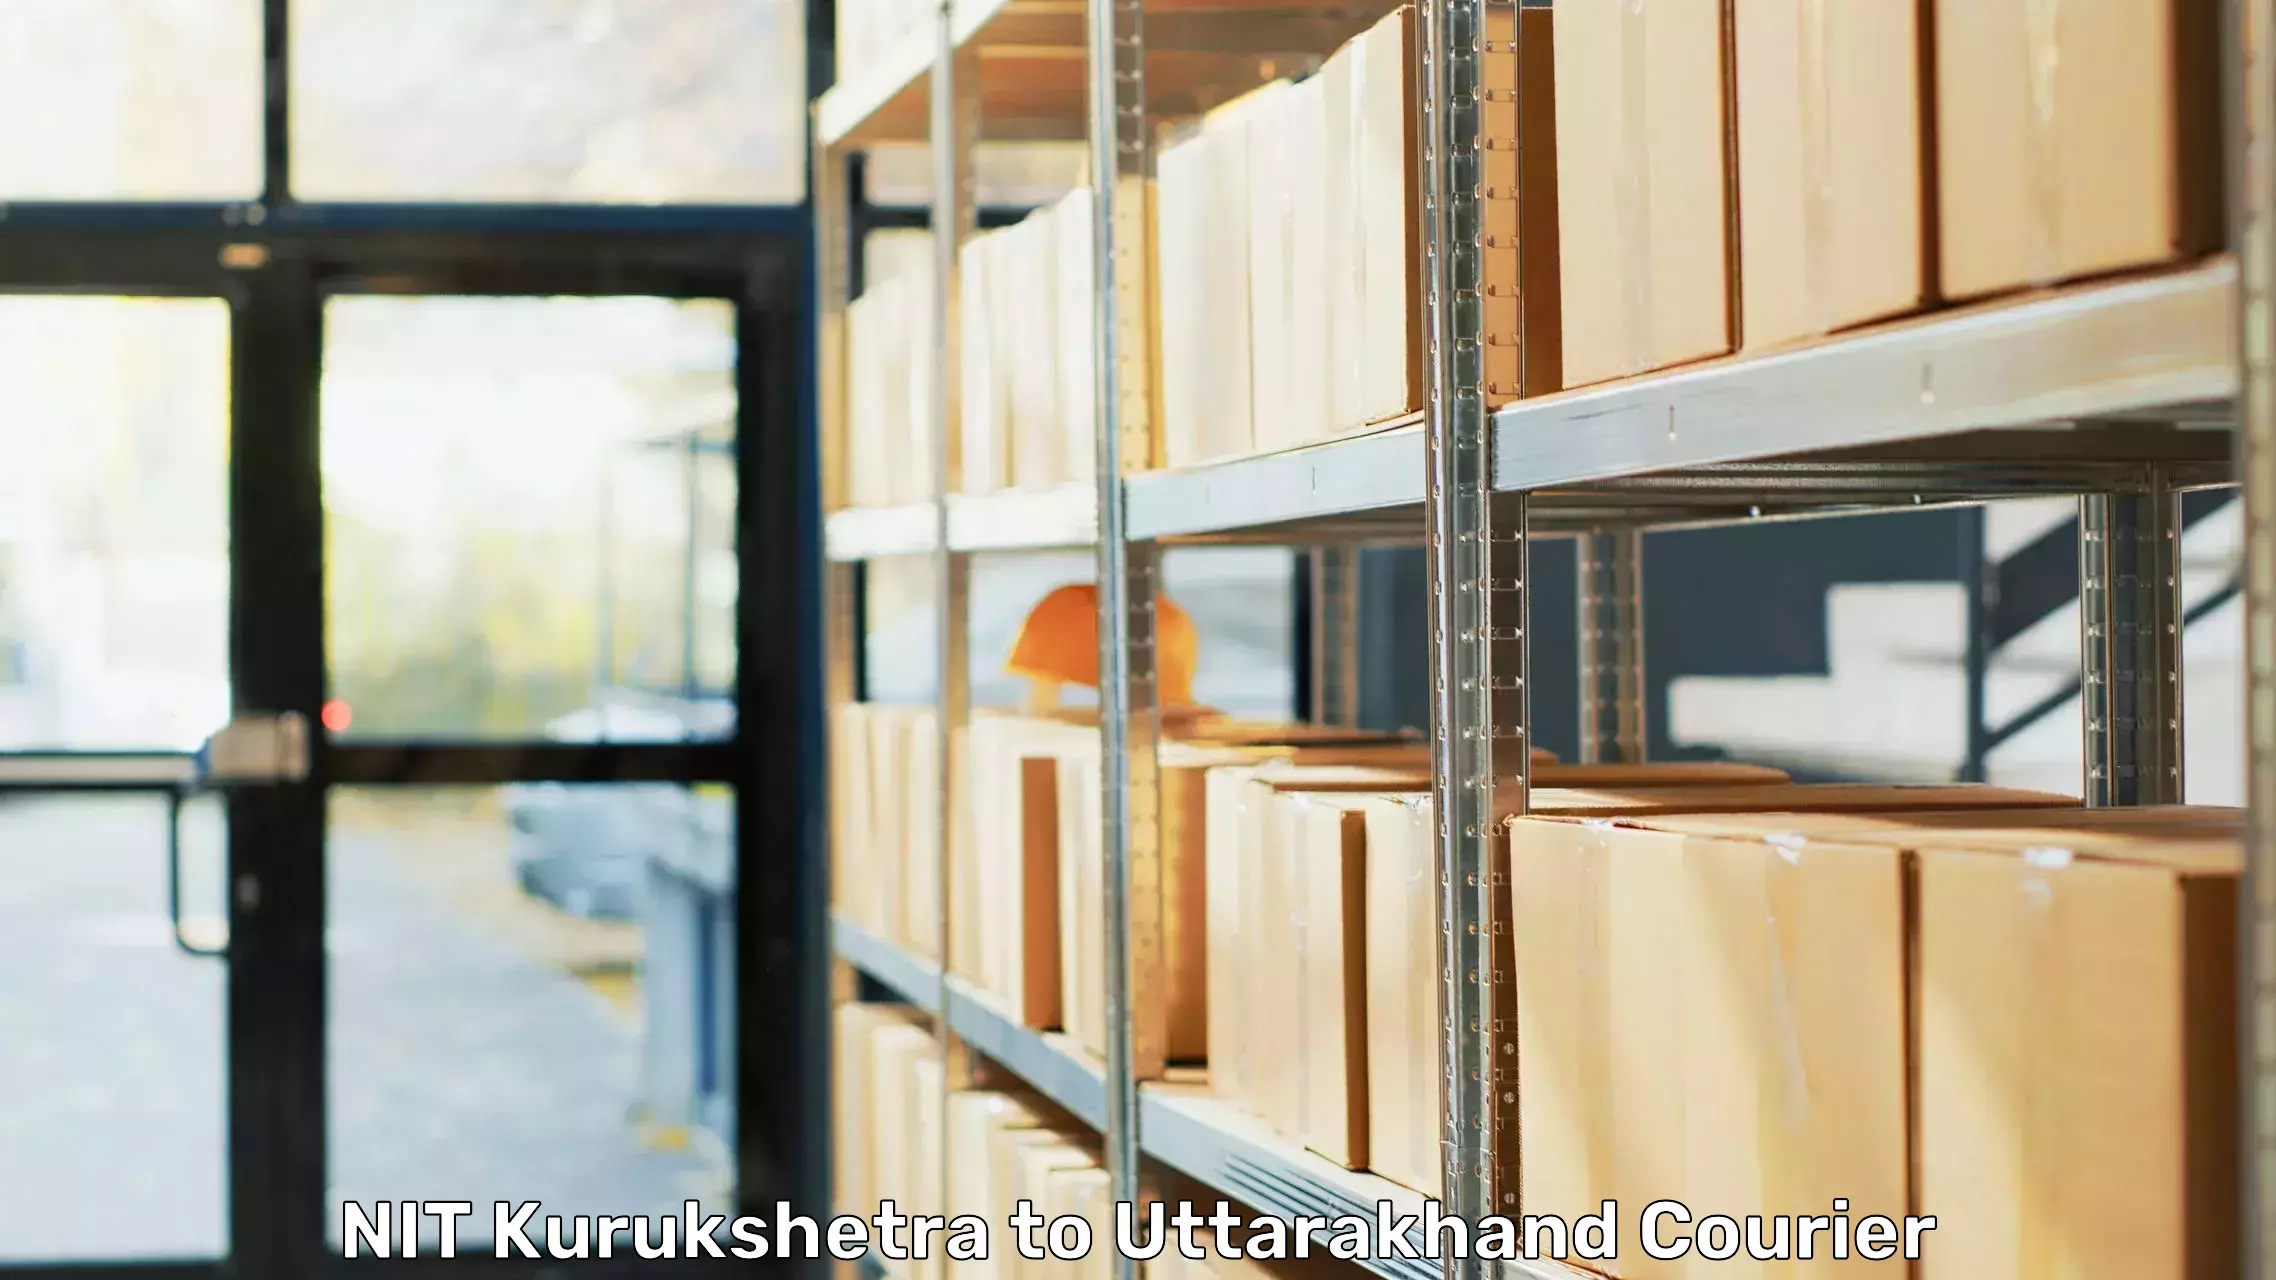 Moving and storage services NIT Kurukshetra to Nainital